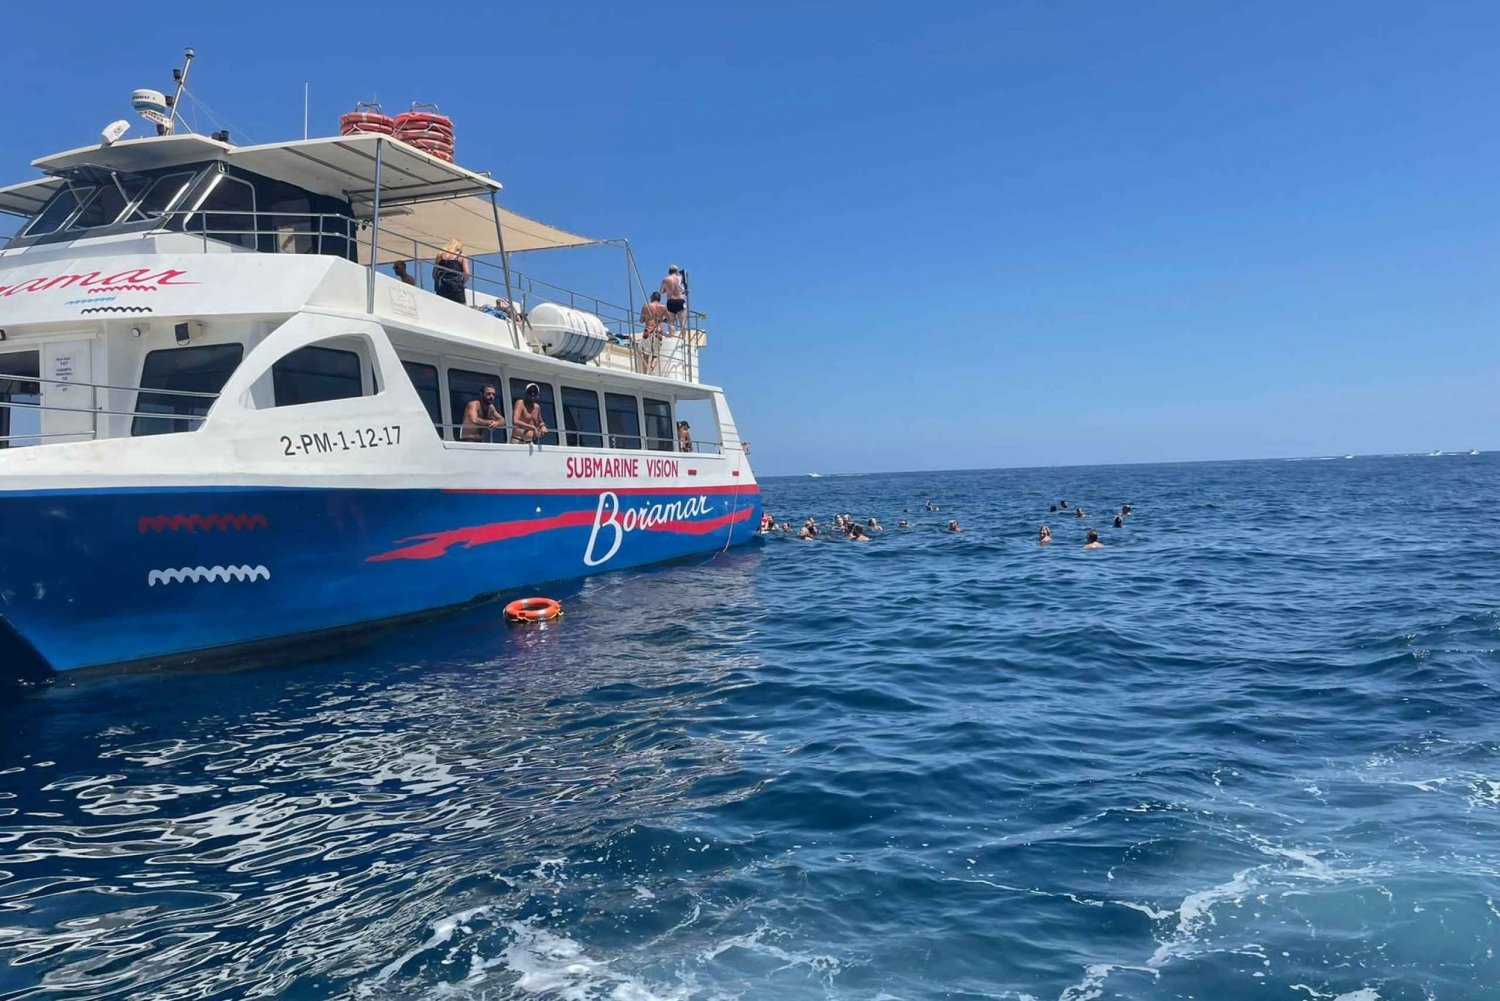 Javea: Wycieczka katamaranem motorowym na wyspę Portitxol z paellą